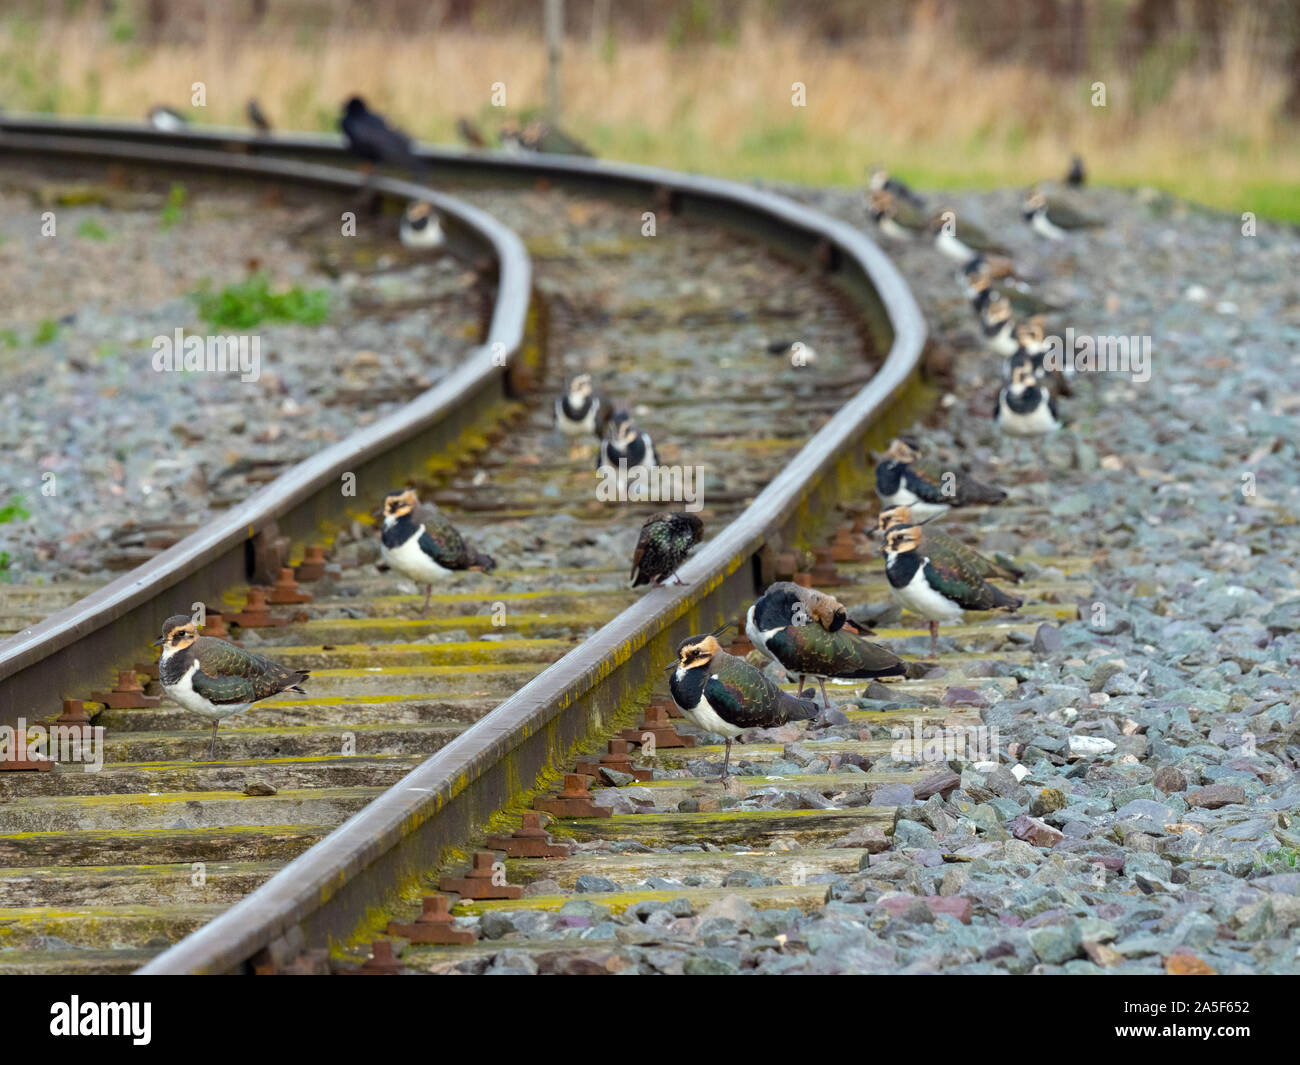 Lapwings Vanellus vanellus in appoggio su binari ferroviari Foto Stock